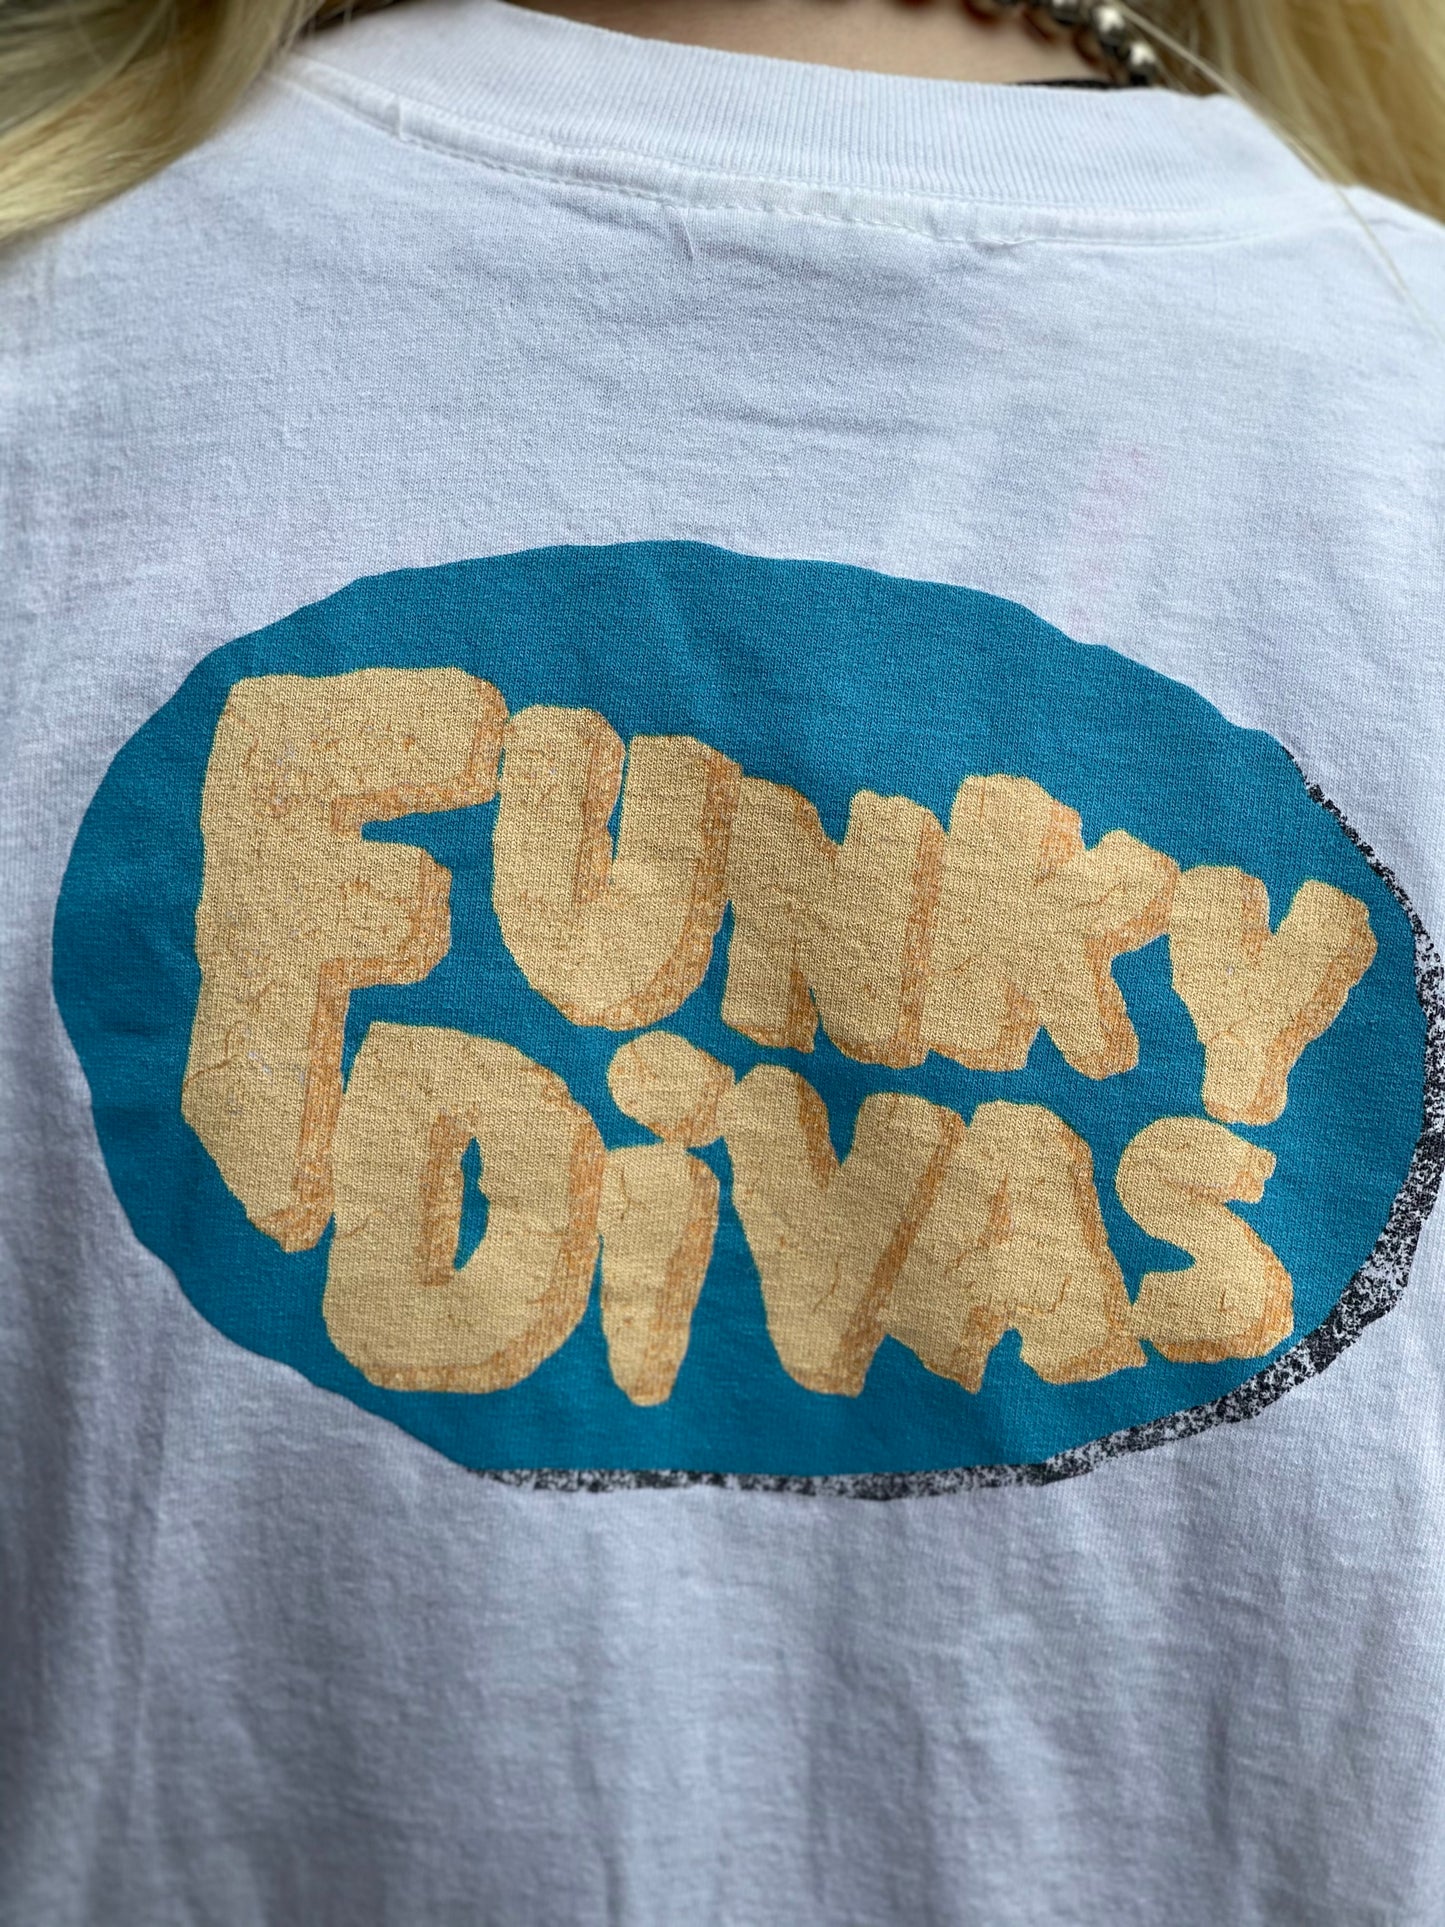 Vintage 1994 Funky Divas Flintstones T-shirt - Spark Pretty